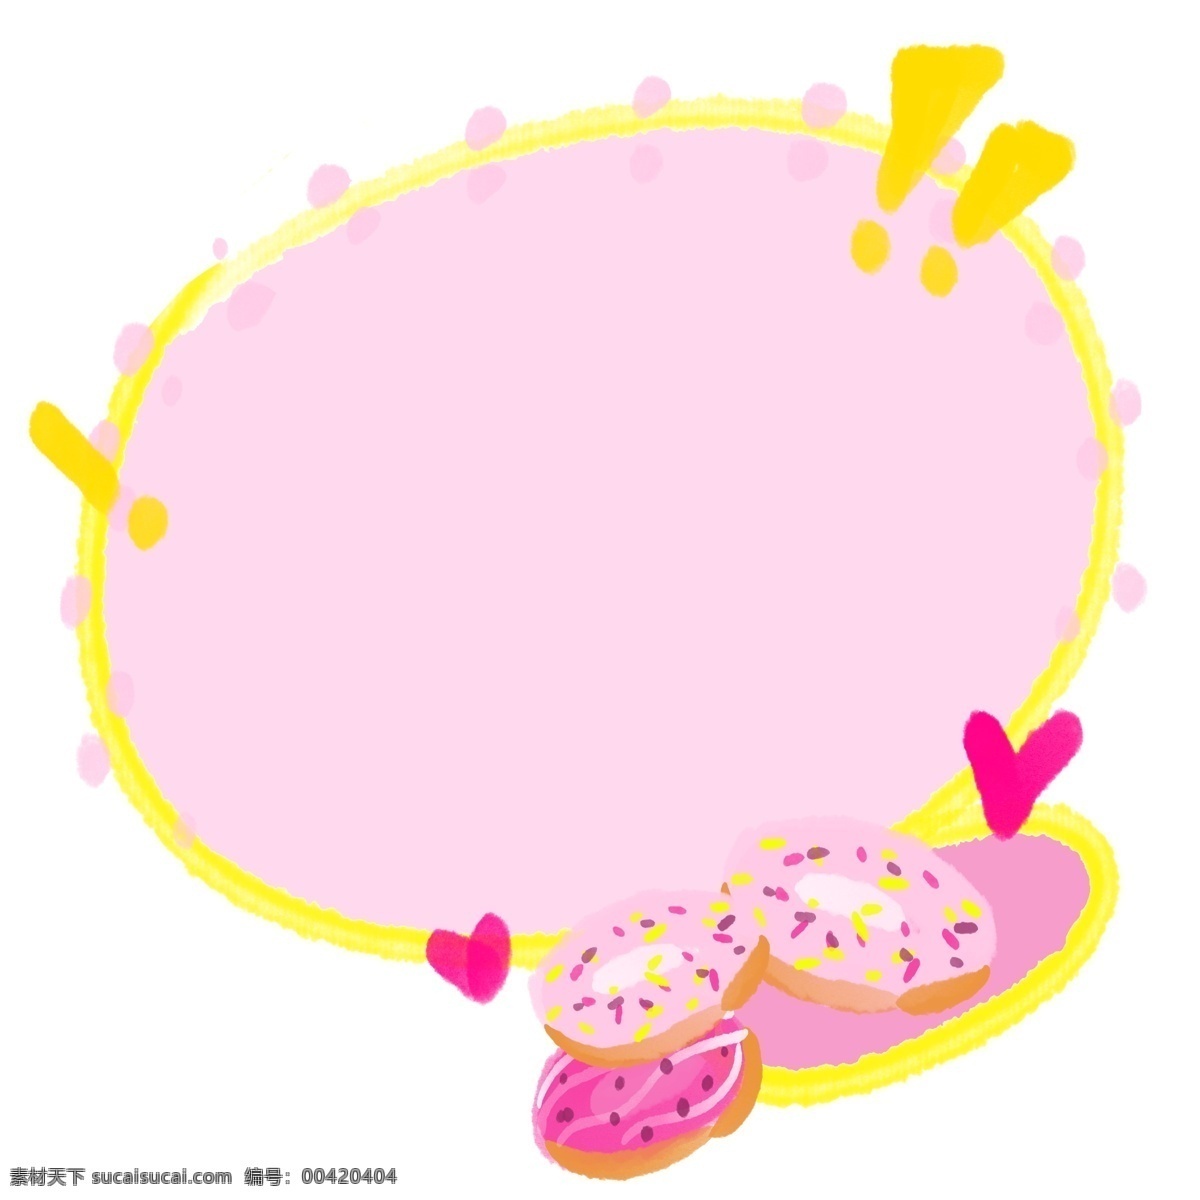 可爱 甜甜 圈 边框 可爱的边框 粉色边框 甜甜圈边框 甜品 甜点 美食边框 红心装饰 创意边框 卡通边框